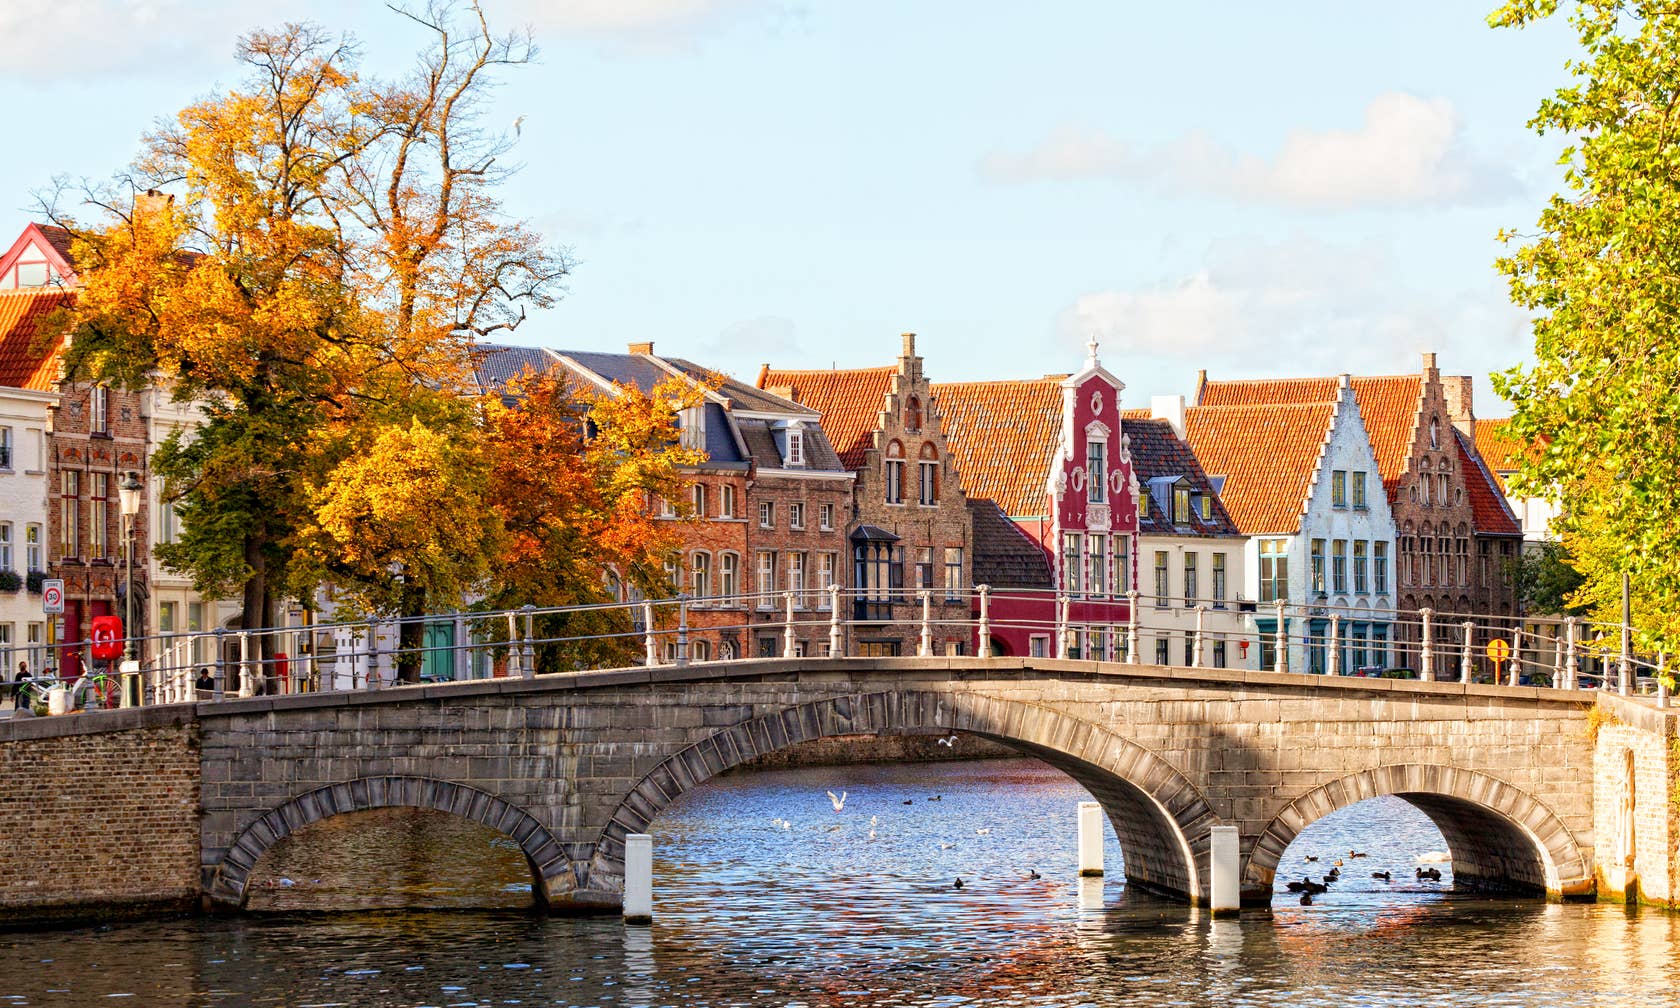 Case de vacanță în Bruges